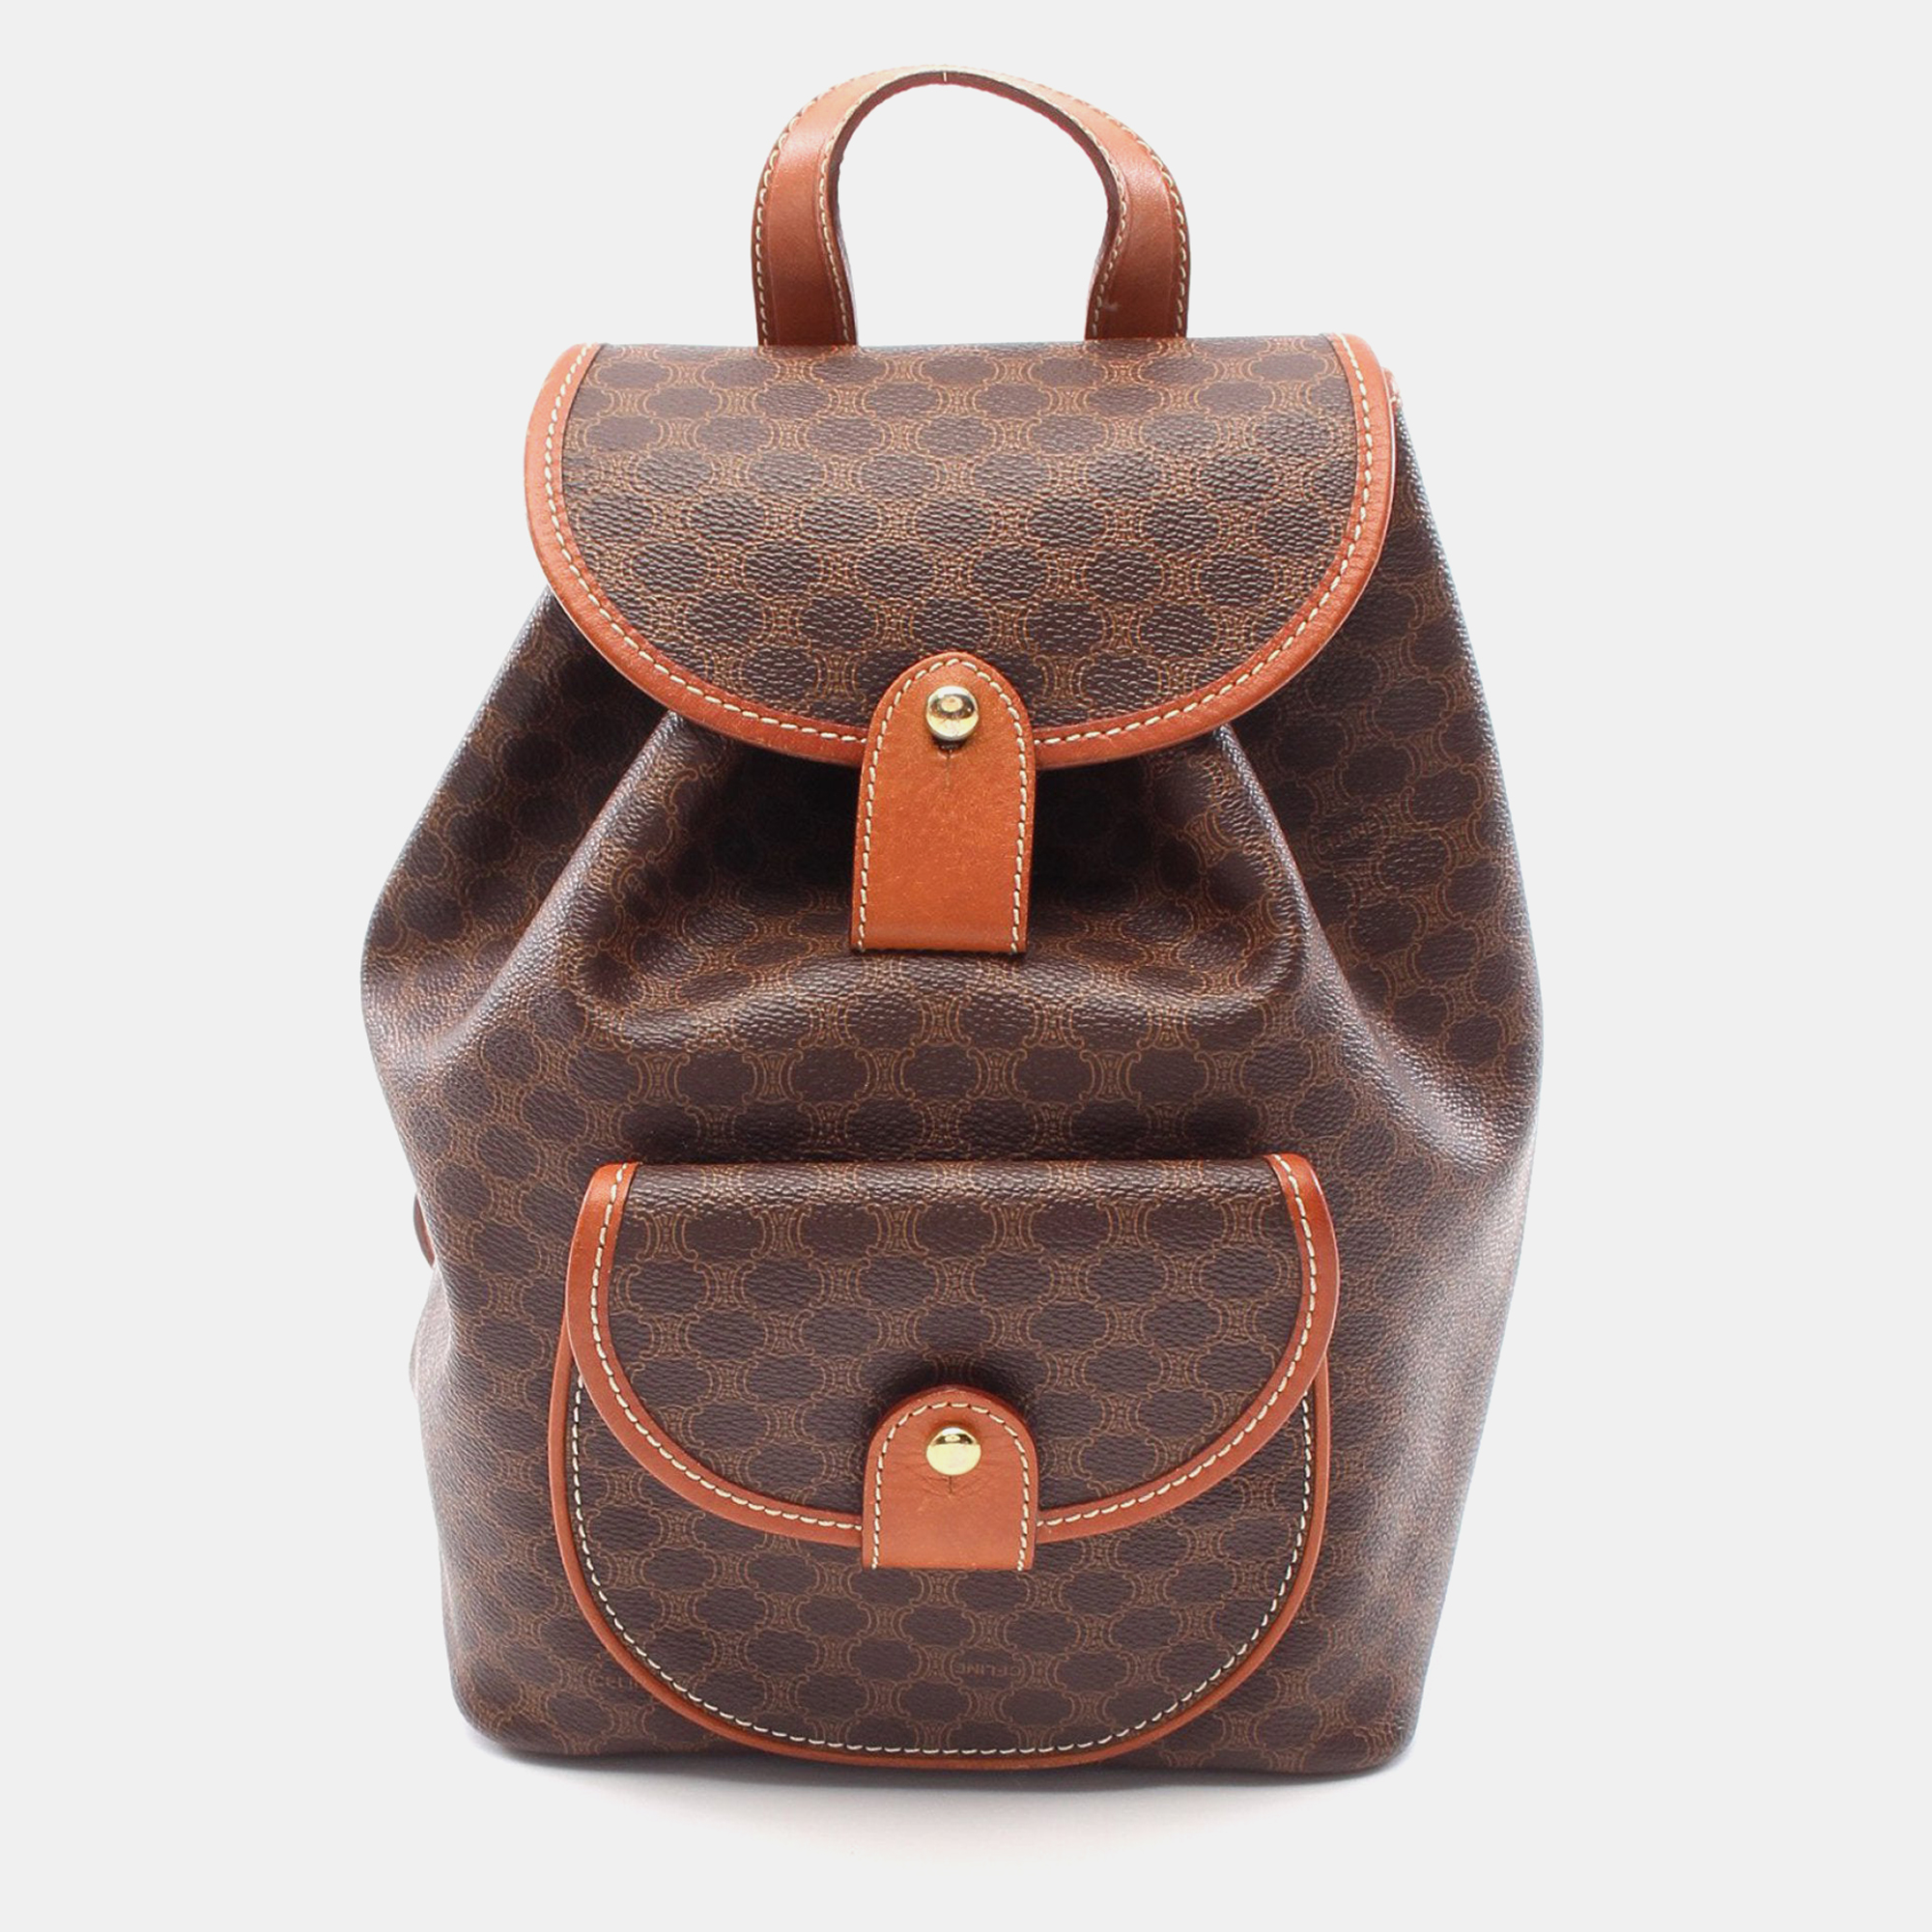 Celine macadam backpack rucksack pvc leather dark brown brown